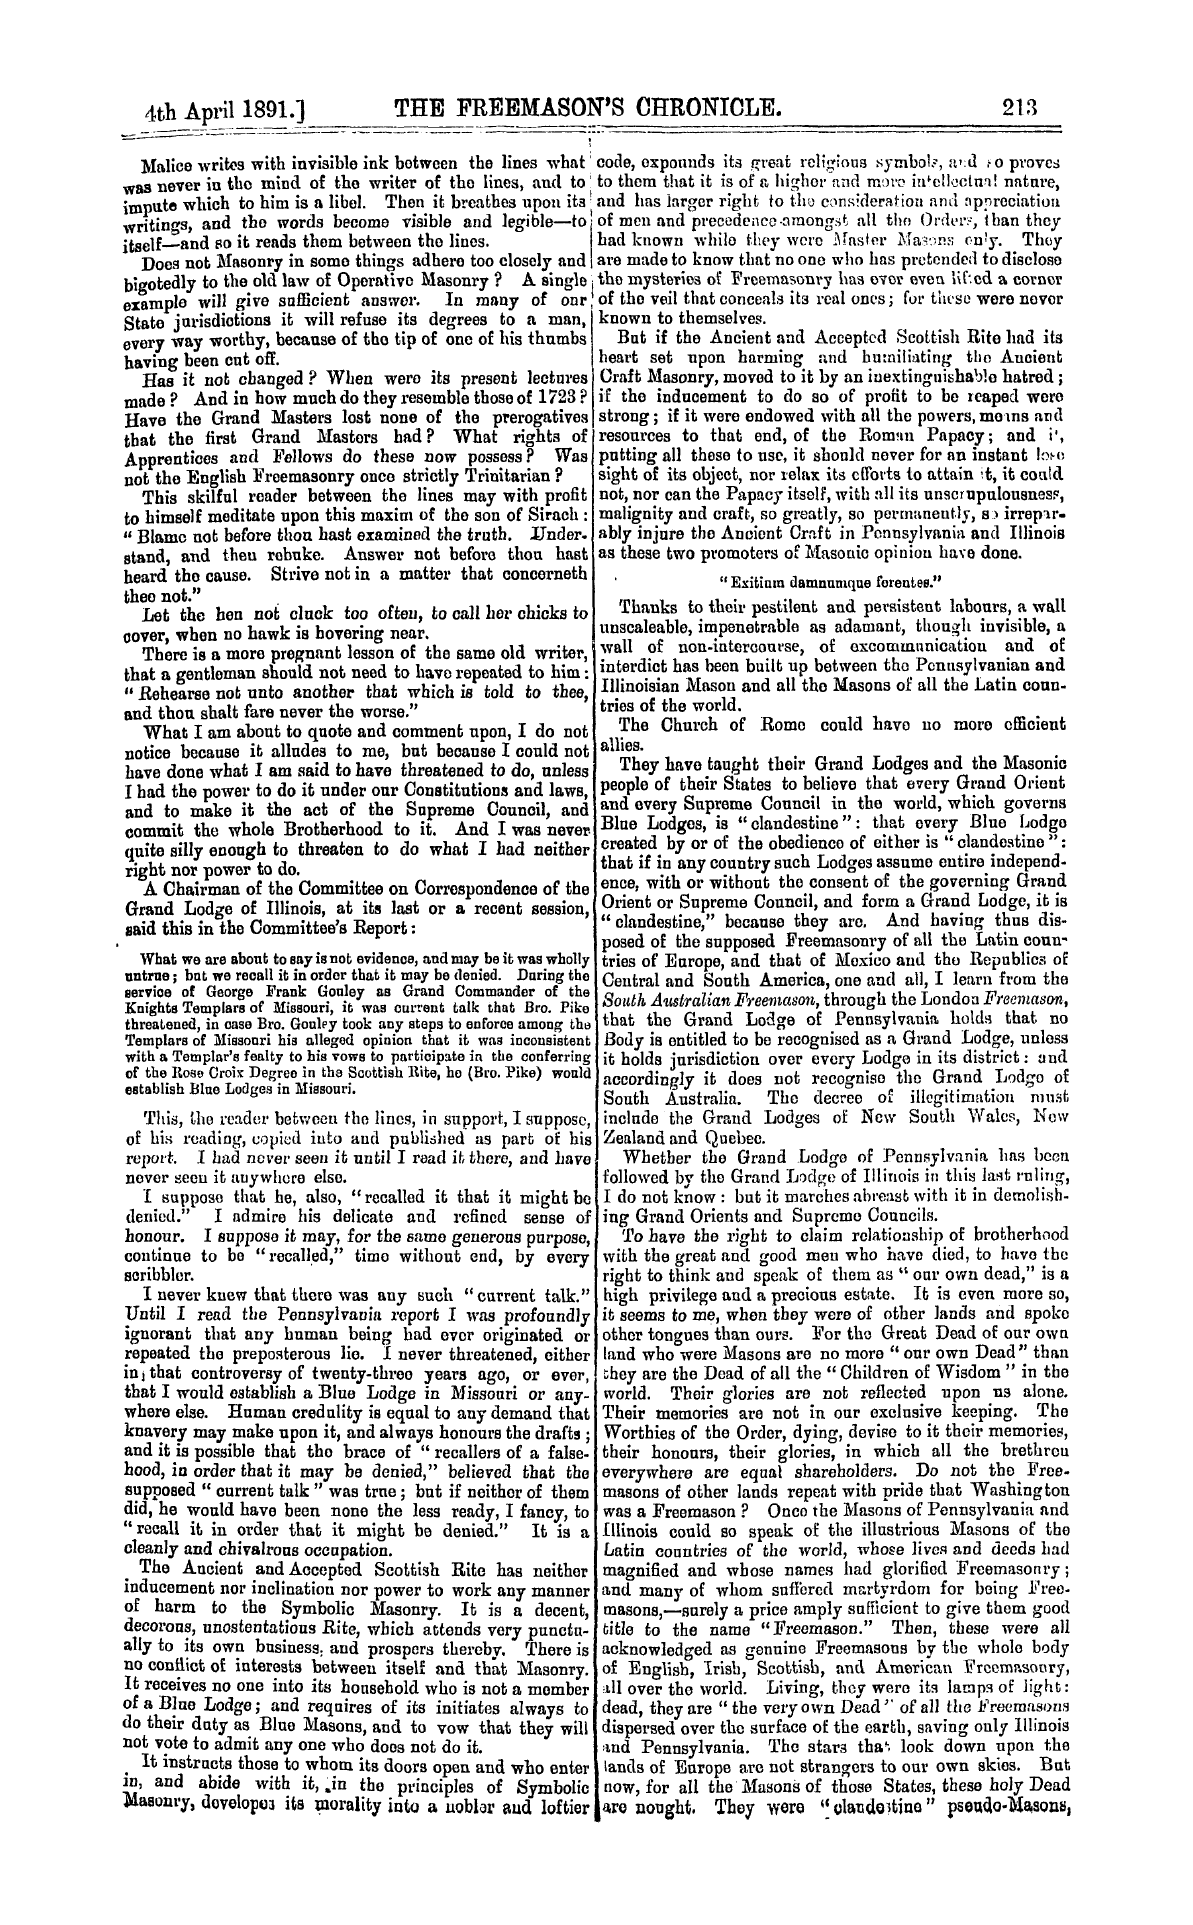 The Freemason's Chronicle: 1891-04-04 - Malevolent Utterances Rebuked.